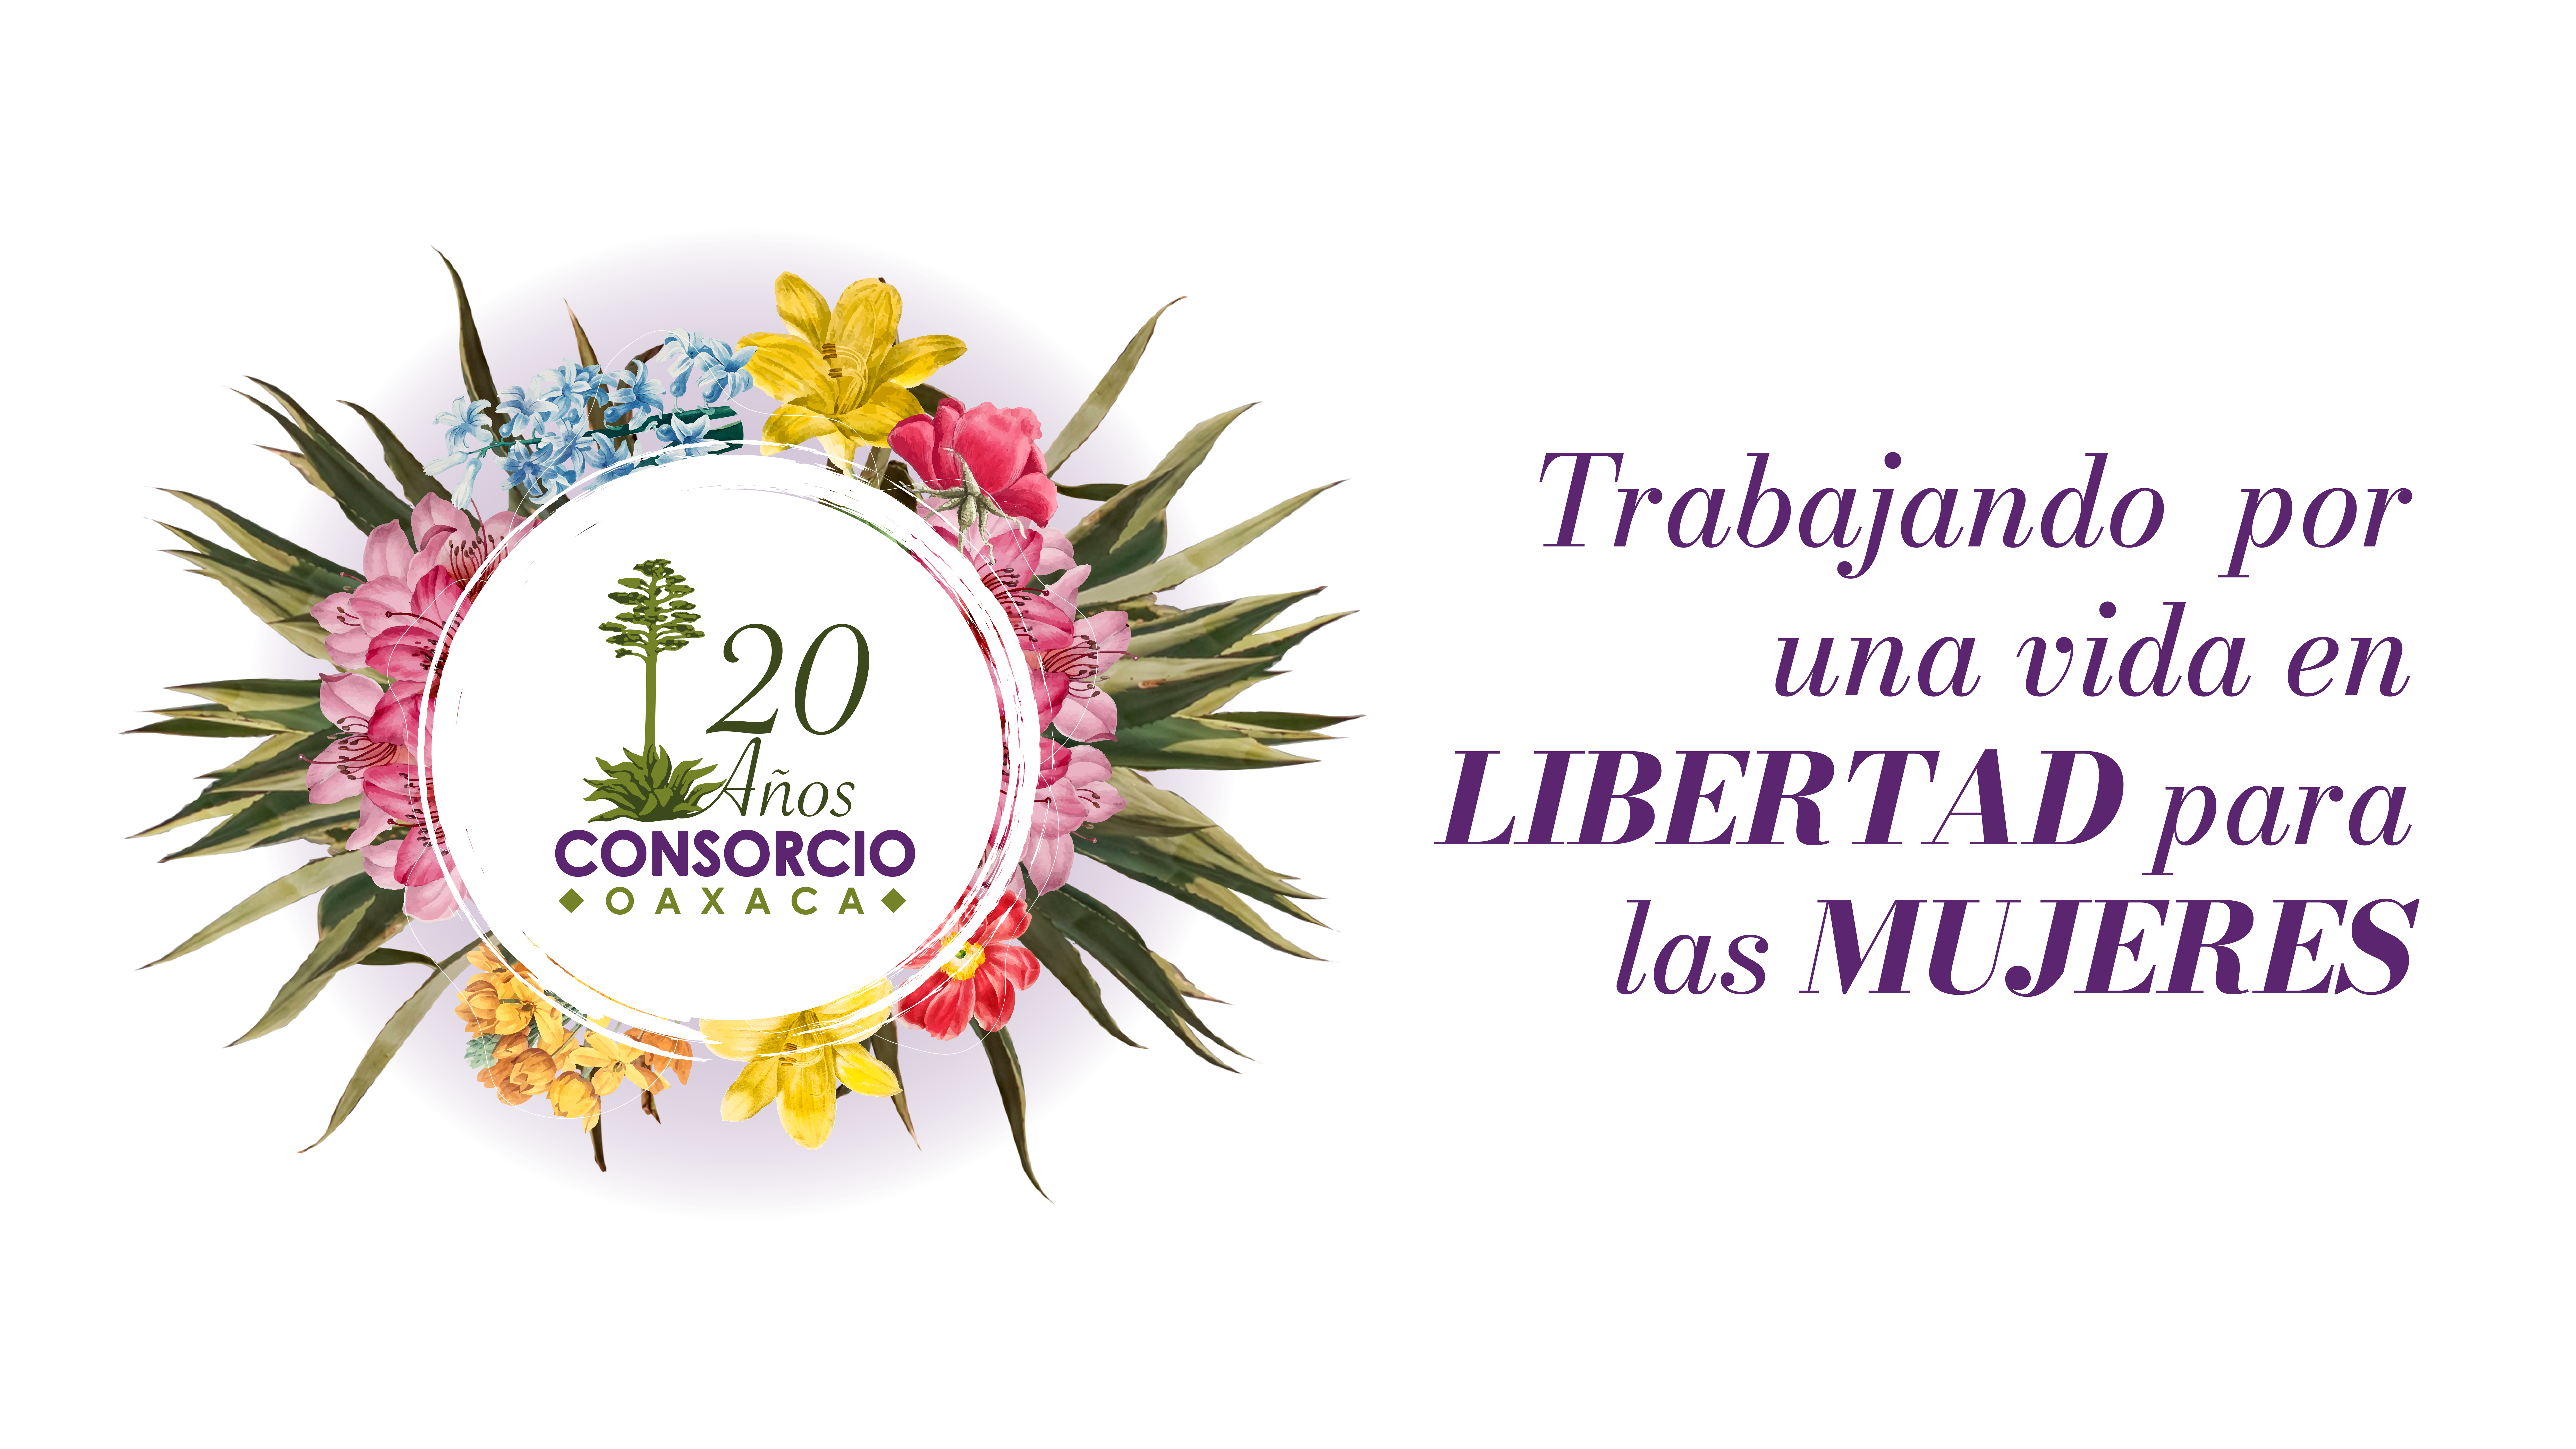 En Consorcio Oaxaca celebramos 20 años trabajando por una vida en libertad para las mujeres